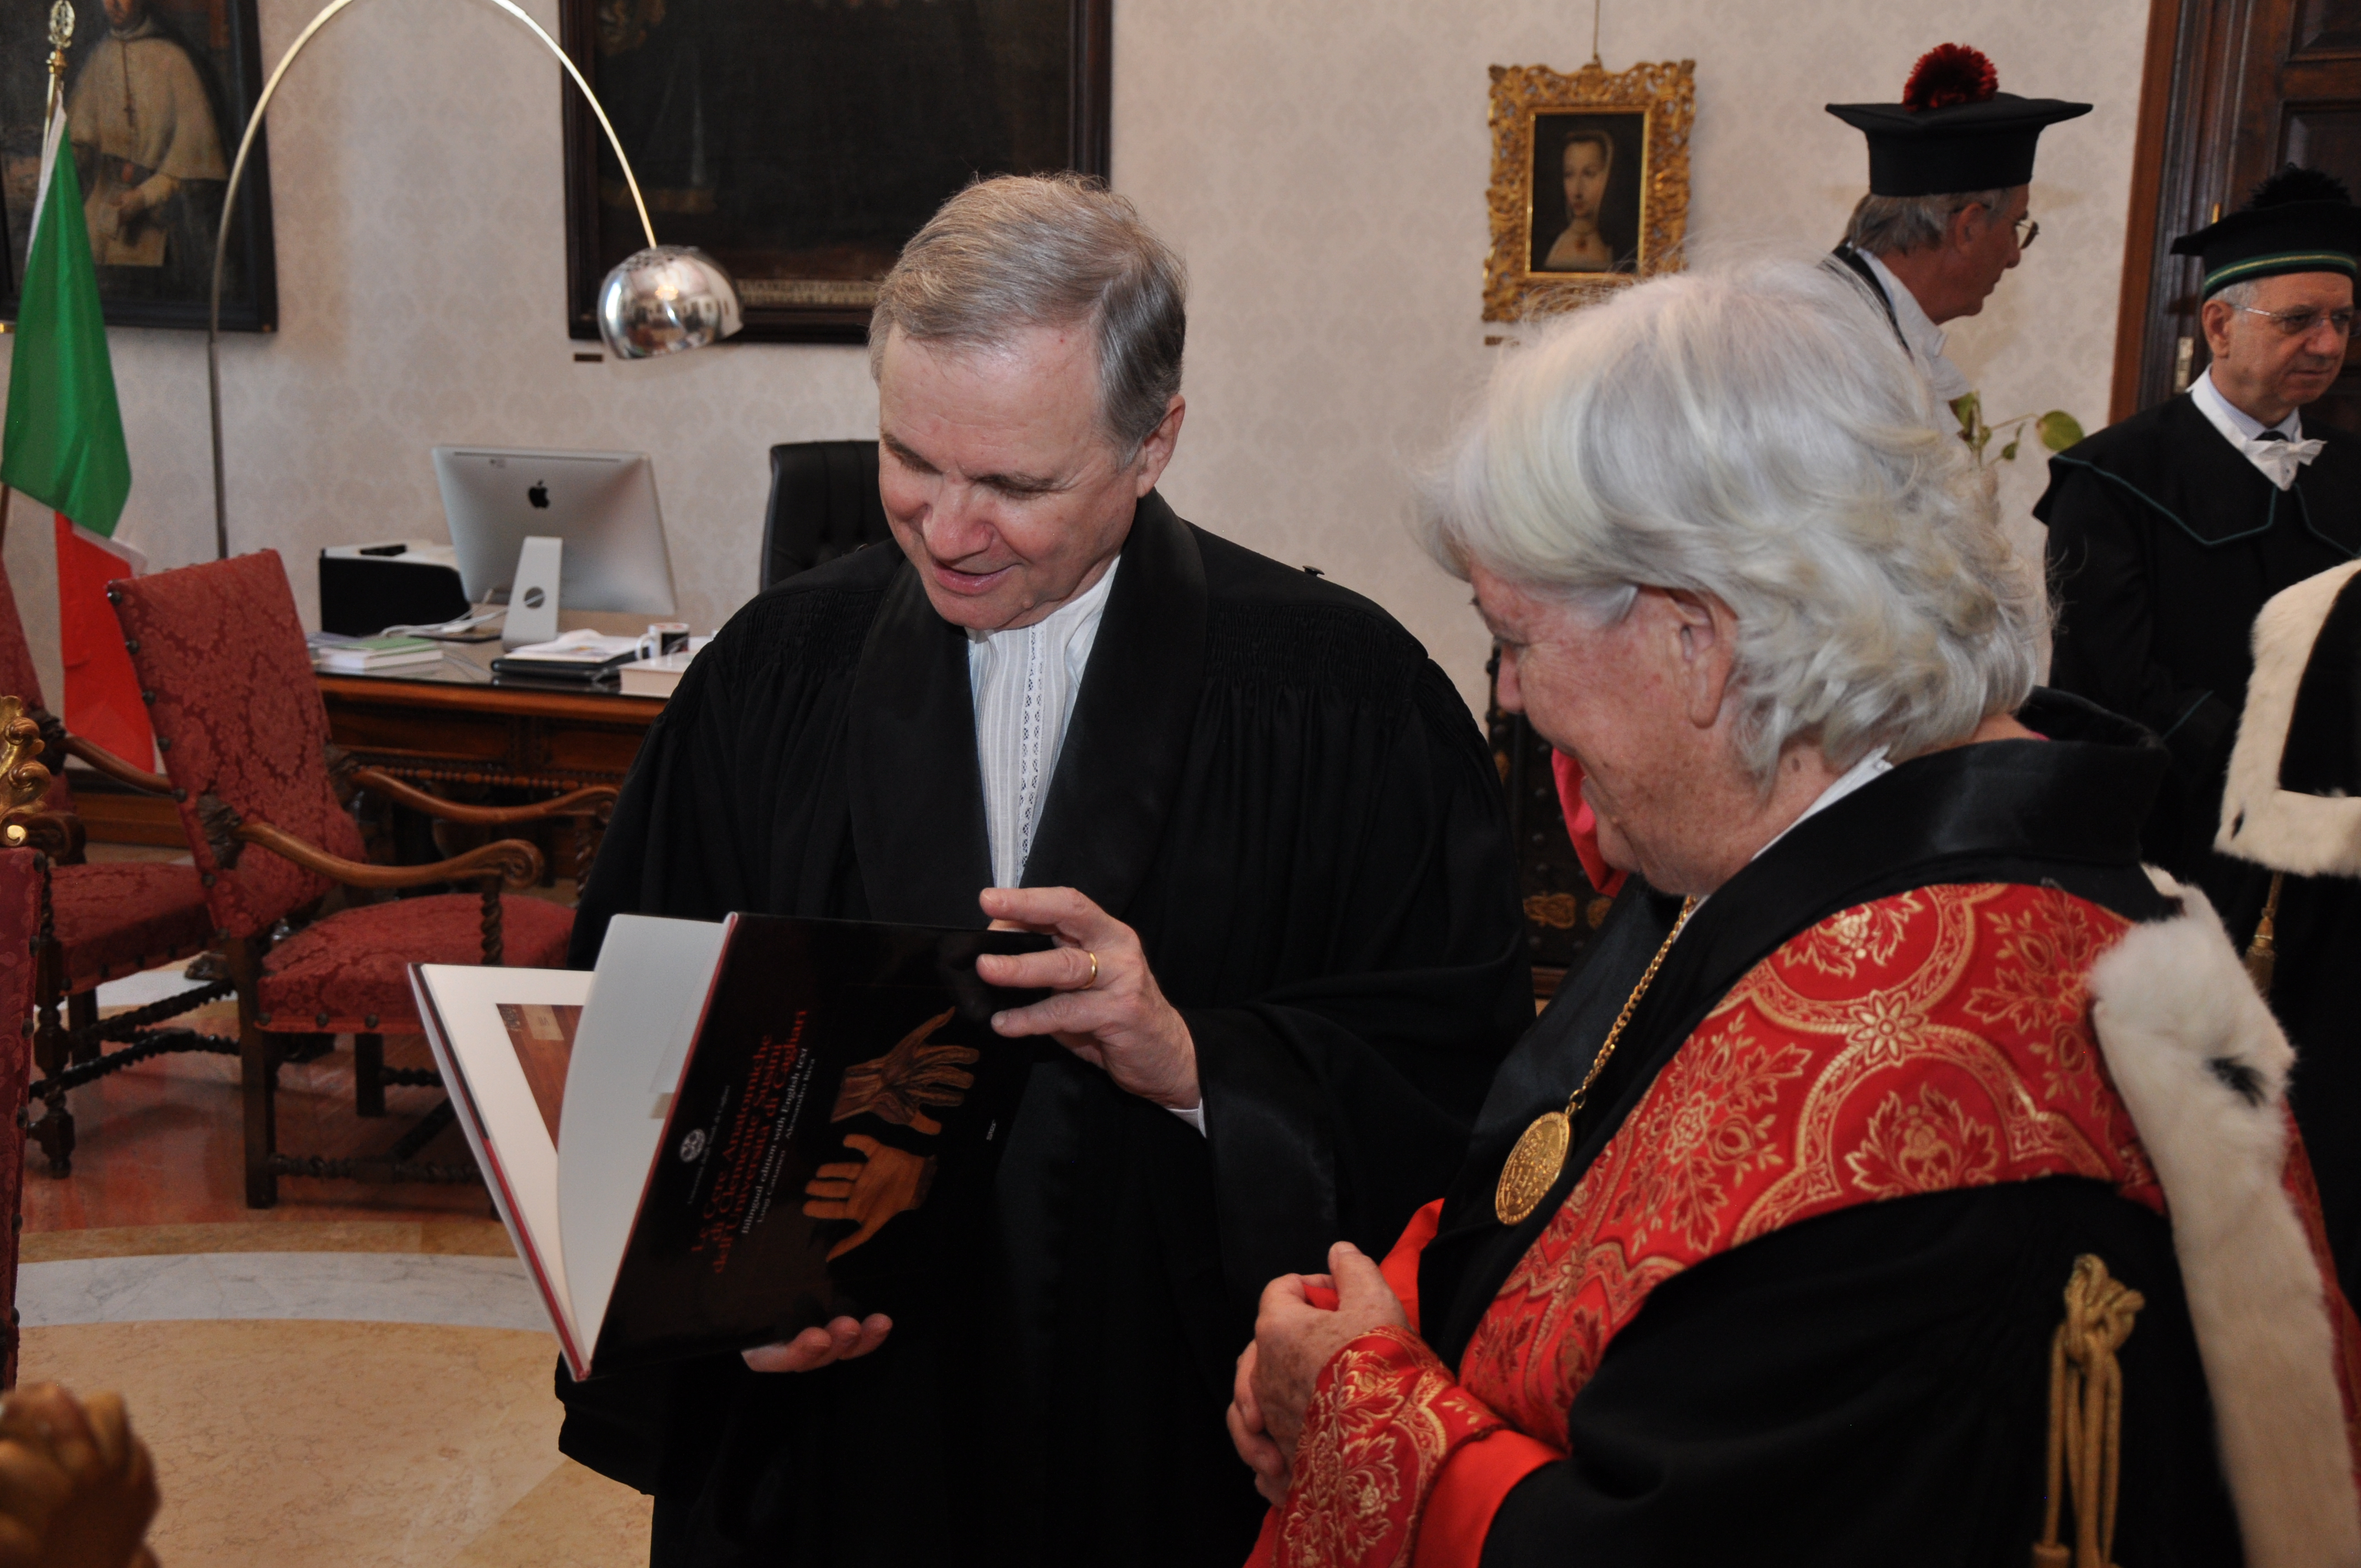 Il Rettore dona al Governatore una copia del volume sulla Mostra delle Cere anatomiche di Clemente Susini